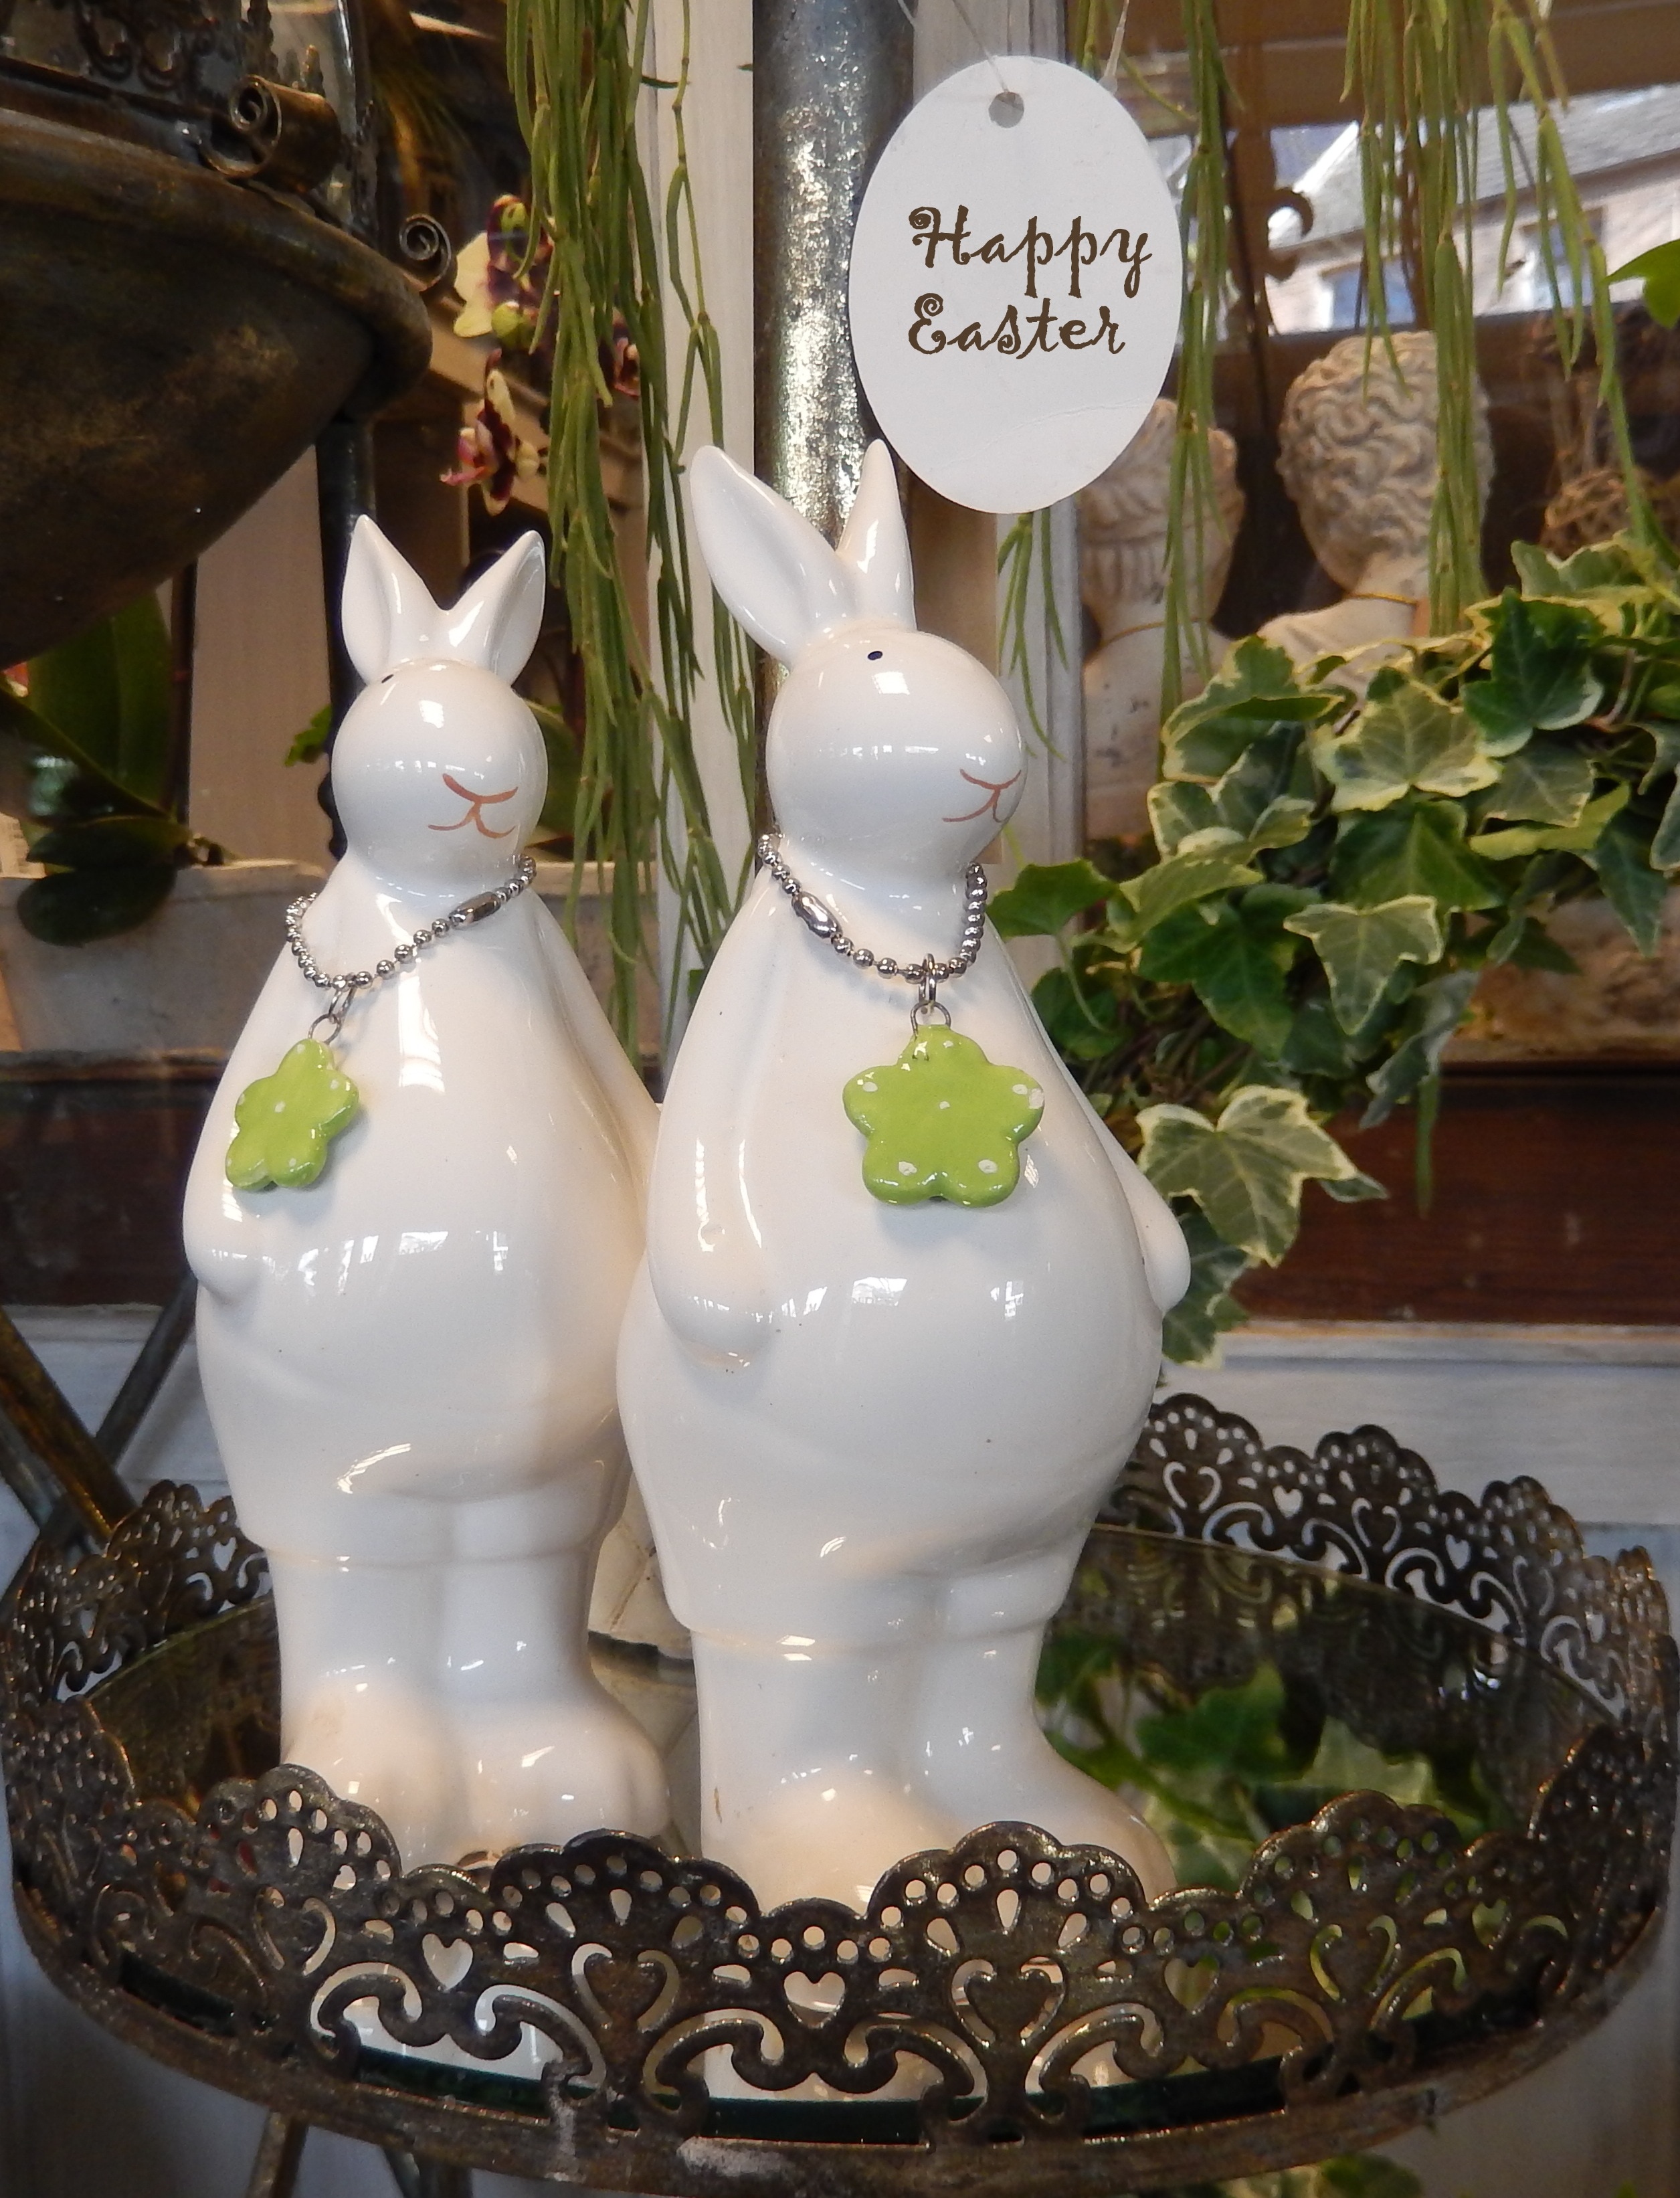 2 white rabbit ceramic figurines